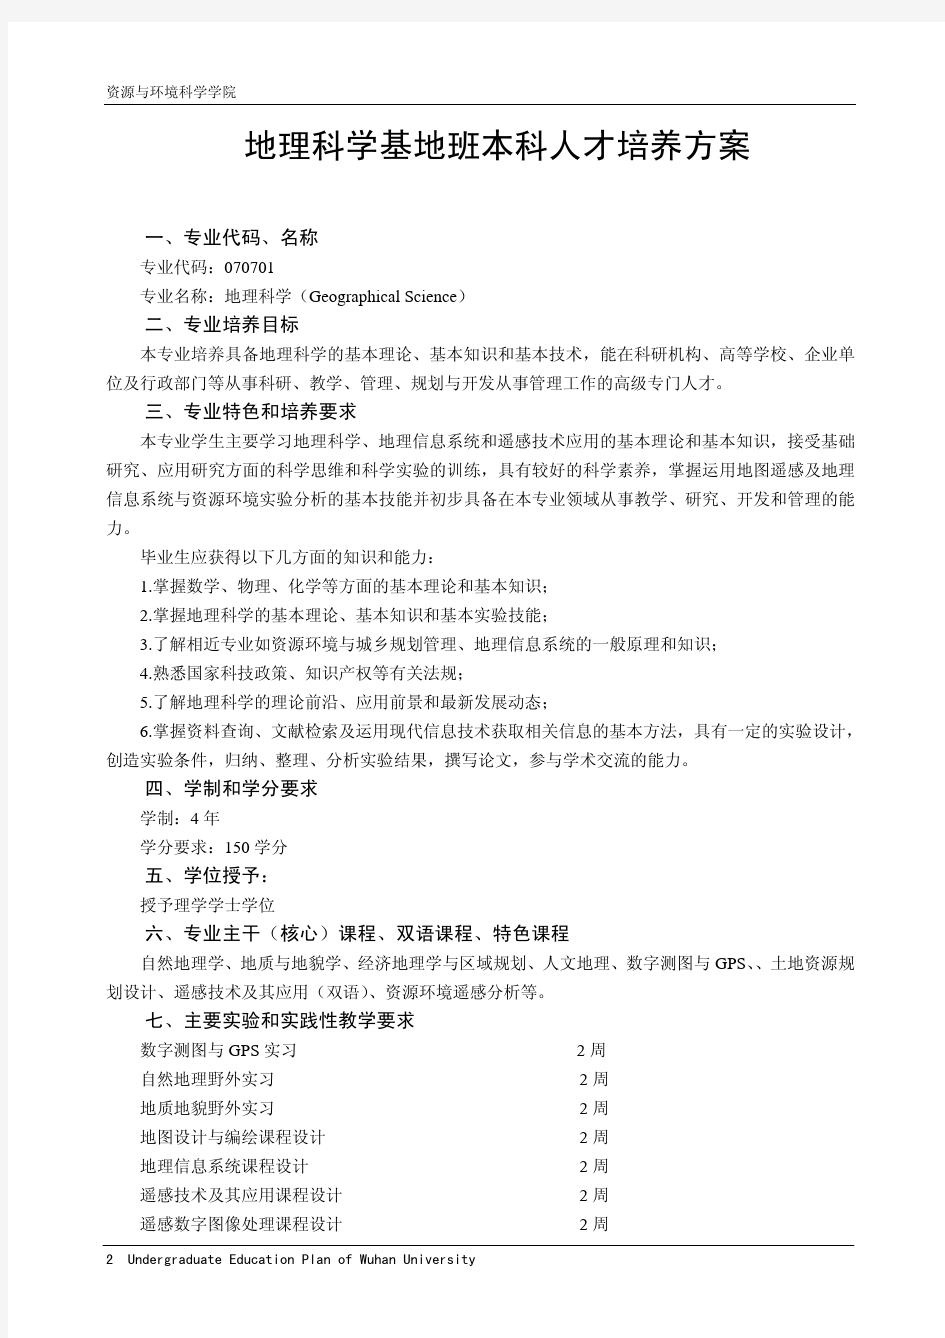 武汉大学地理科学基地班本科人才培养方案(2010版)